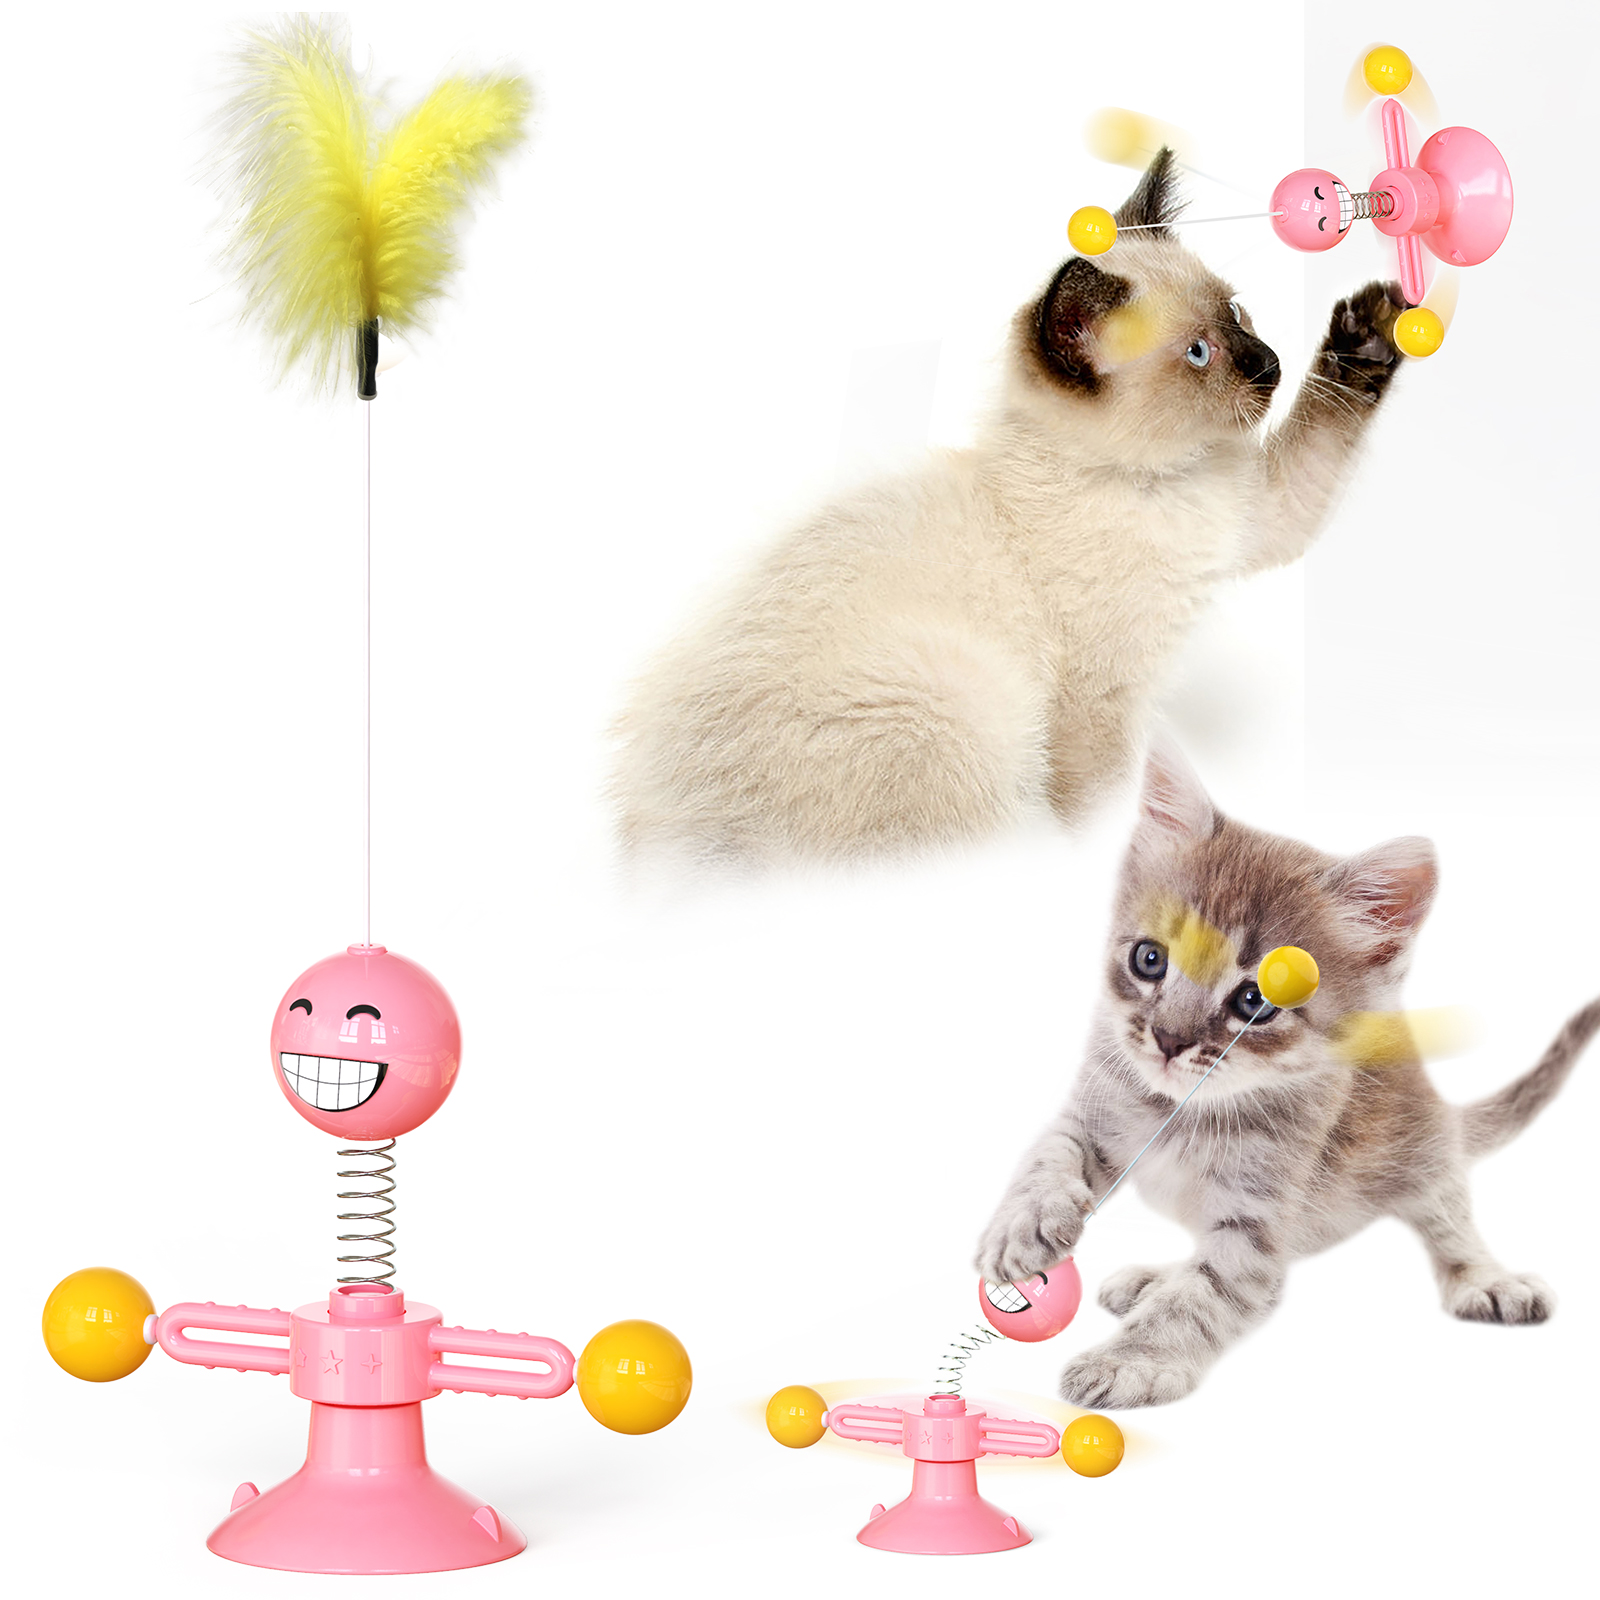 Vente chaude chat drôle artefact printemps jouet pour chat humain jouet pour chat à plumes